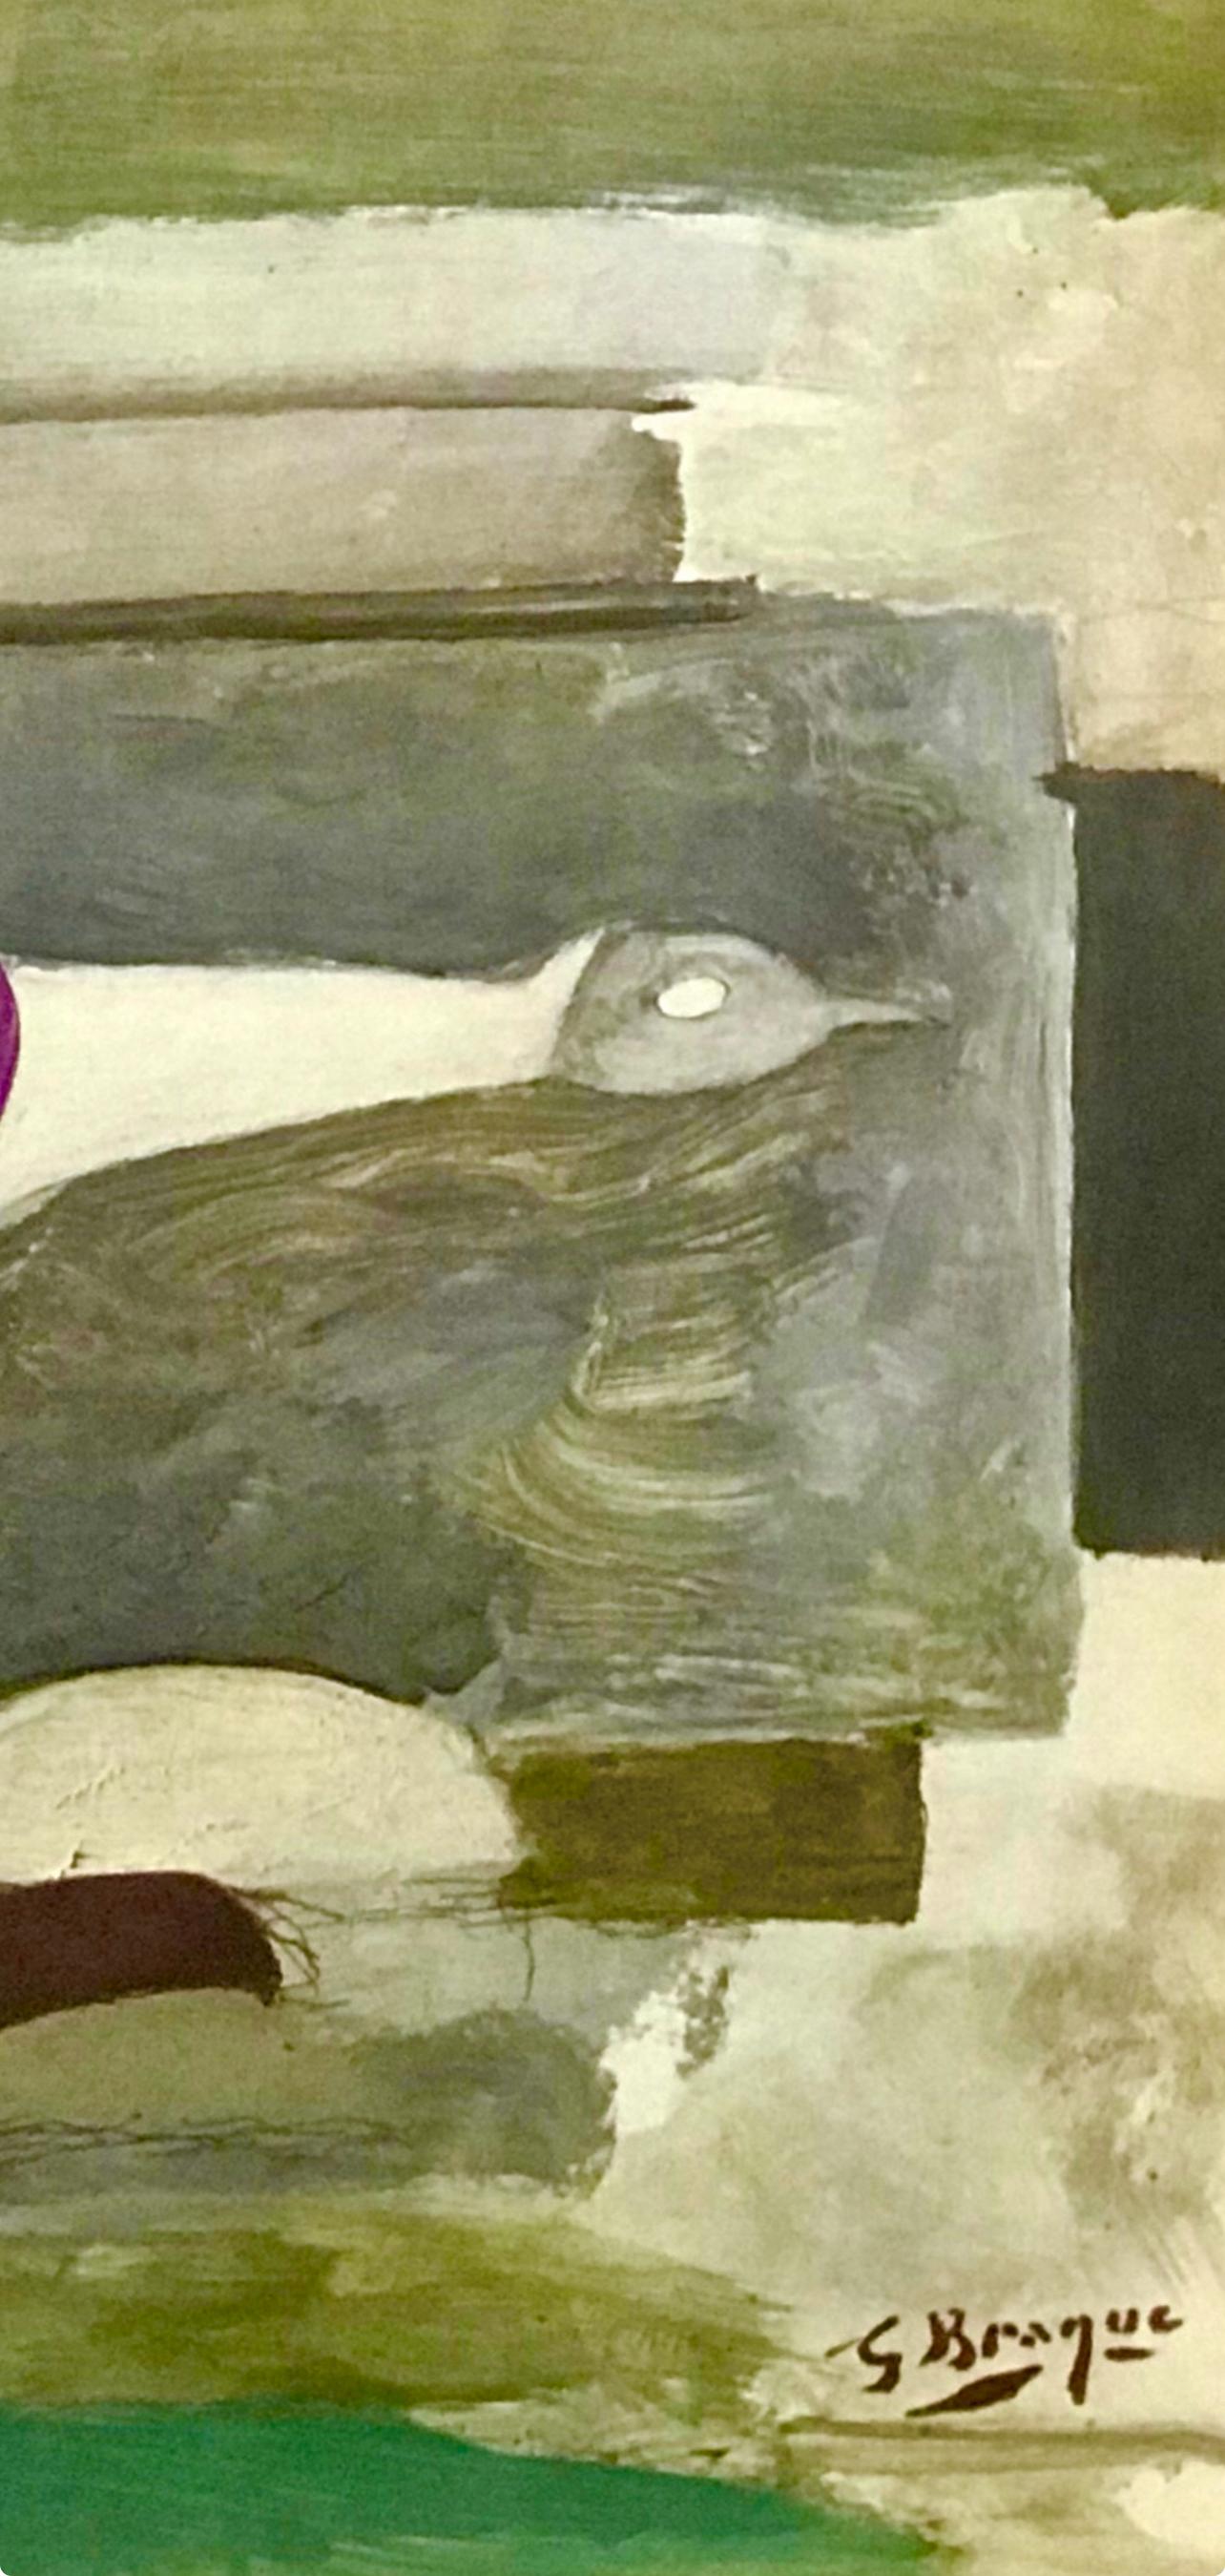 Braque, Oiseaux, Verve: Revue Artistique et Littéraire (after) - Print by Georges Braque